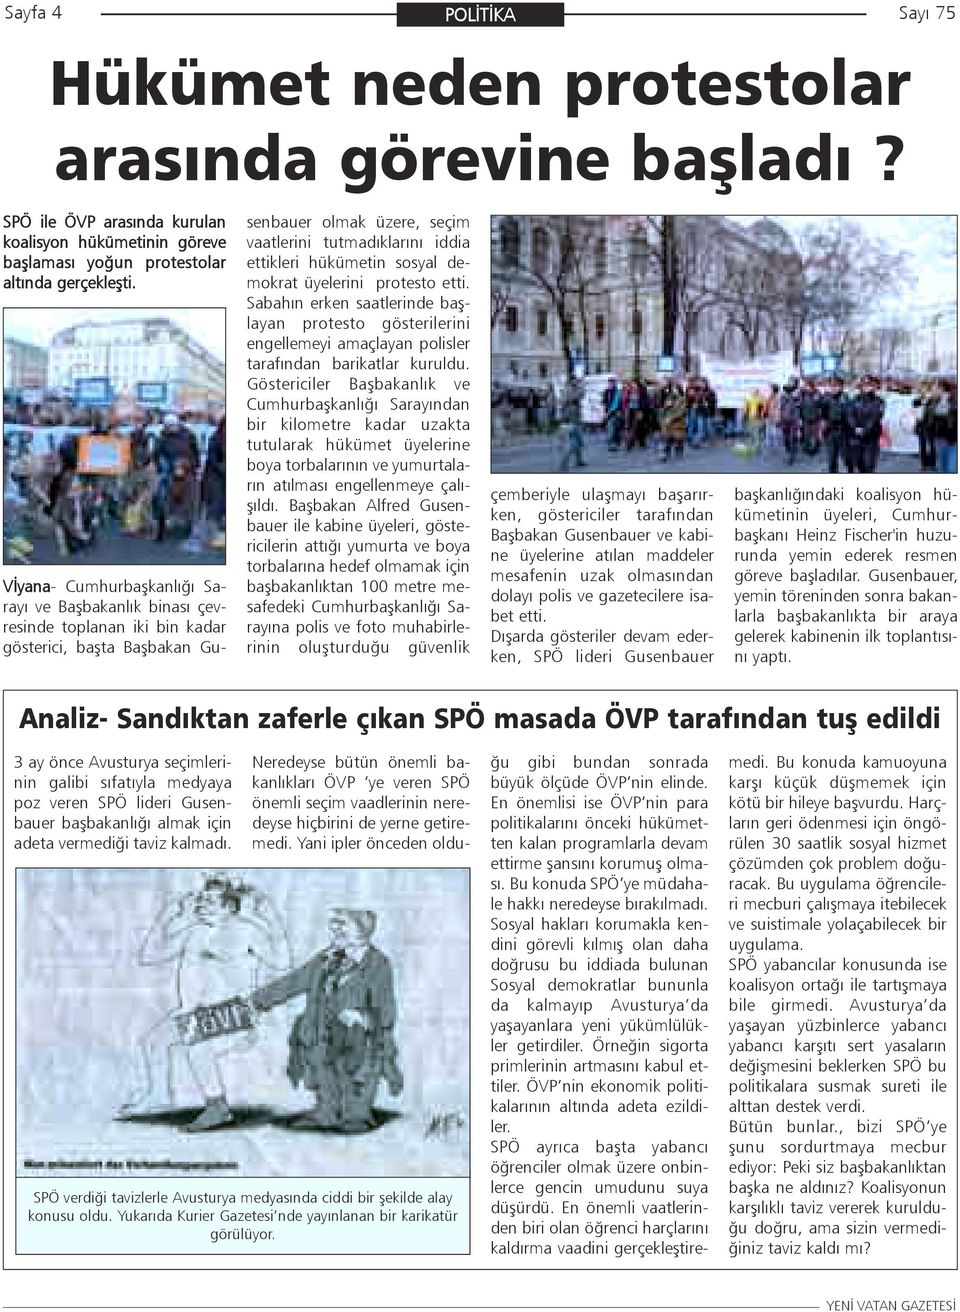 sosyal demokrat üyelerini protesto etti. Sabahýn erken saatlerinde baþlayan protesto gösterilerini engellemeyi amaçlayan polisler tarafýndan barikatlar kuruldu.